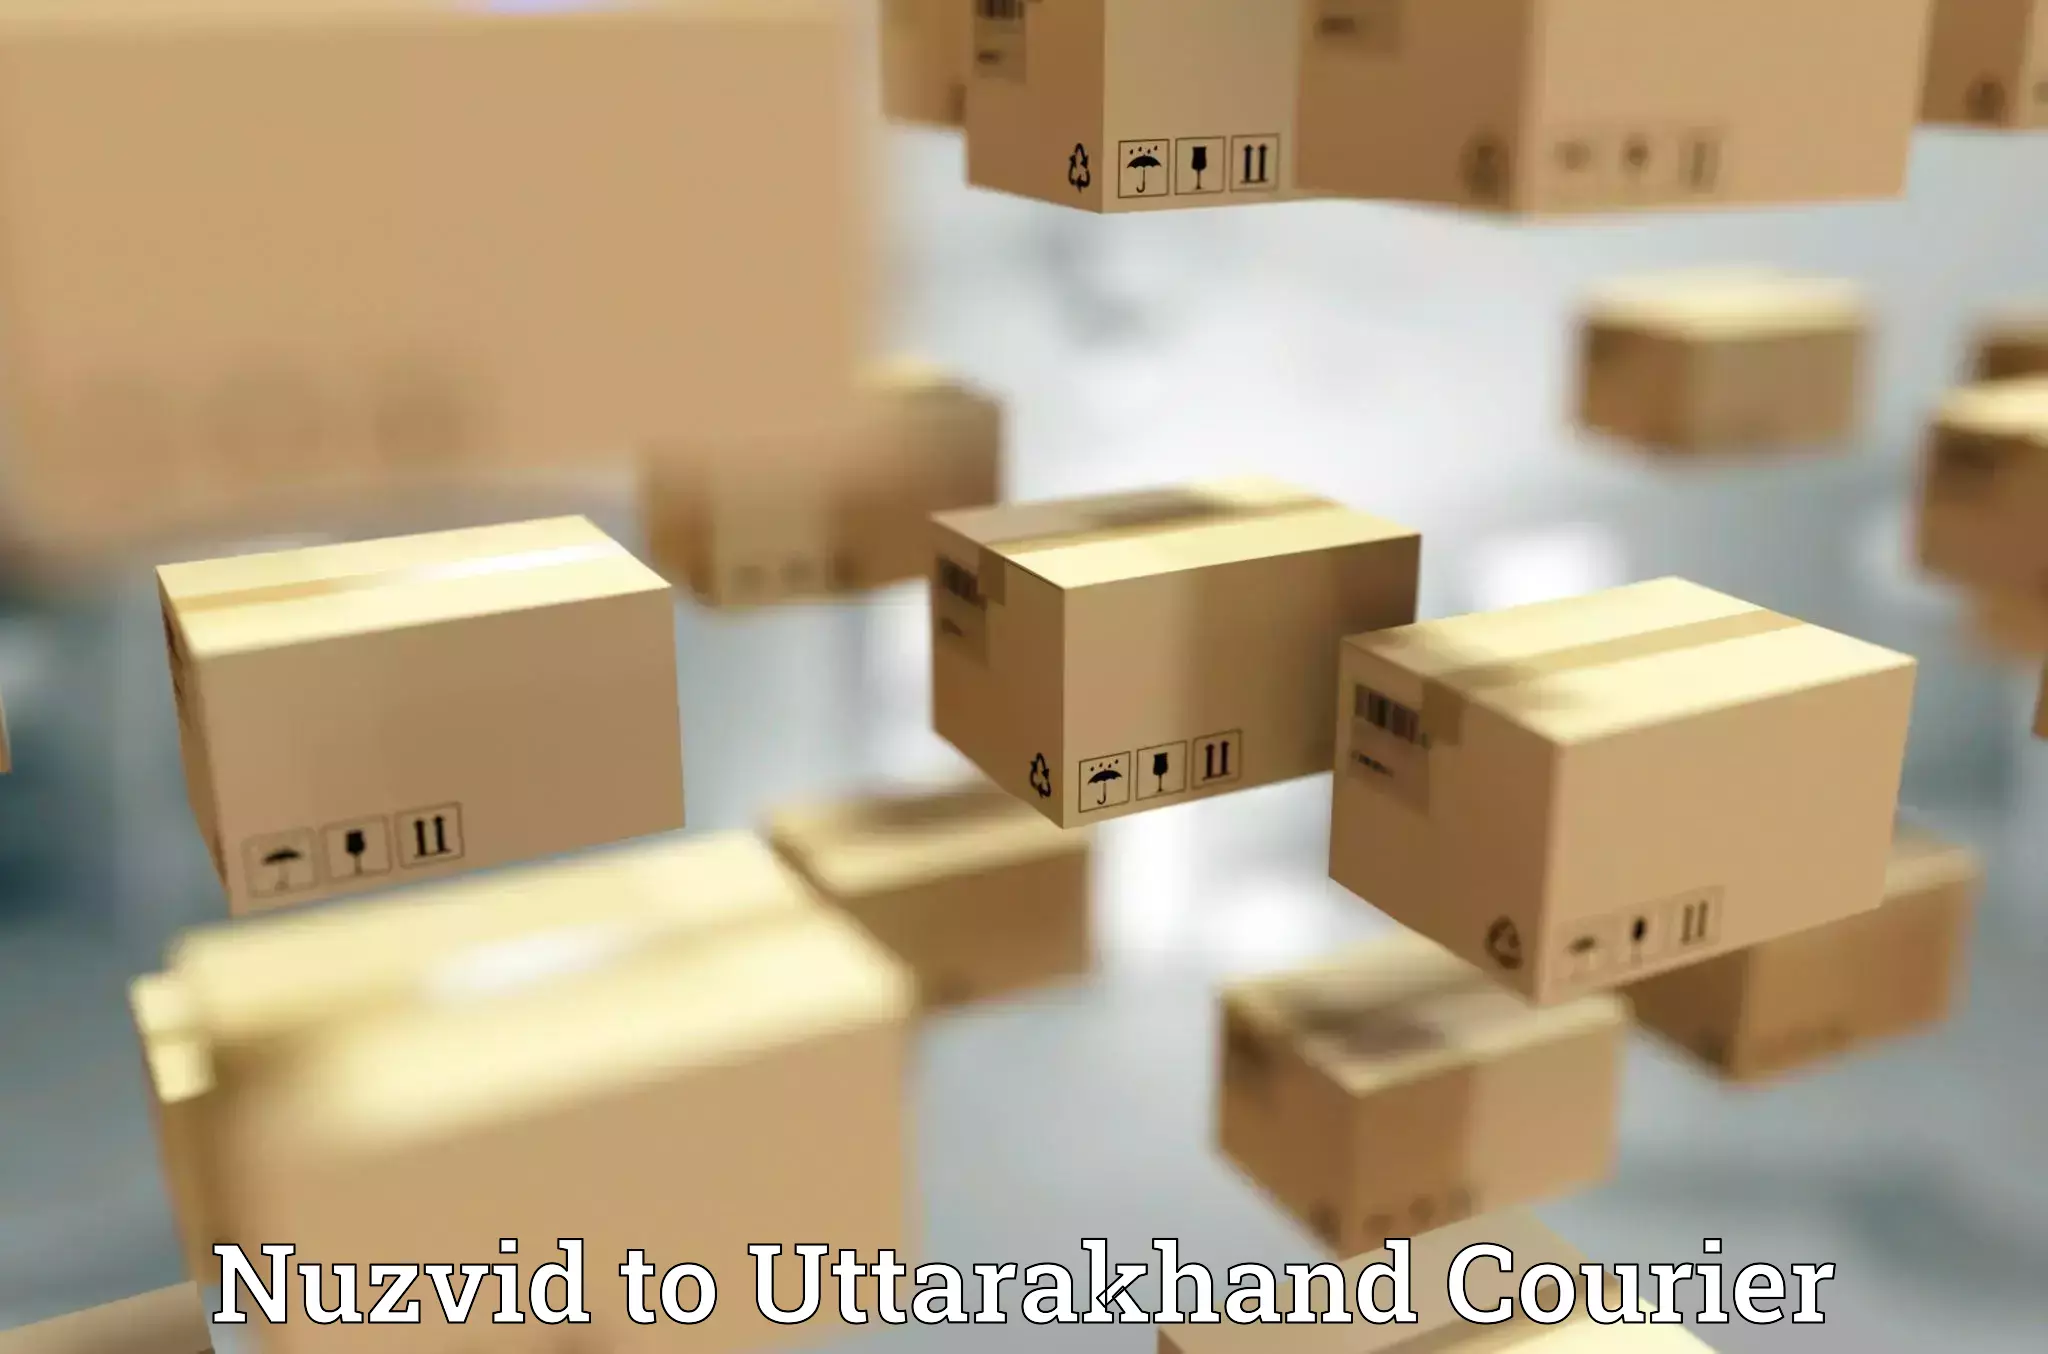 Courier service comparison in Nuzvid to Srinagar Pauri Garhwal